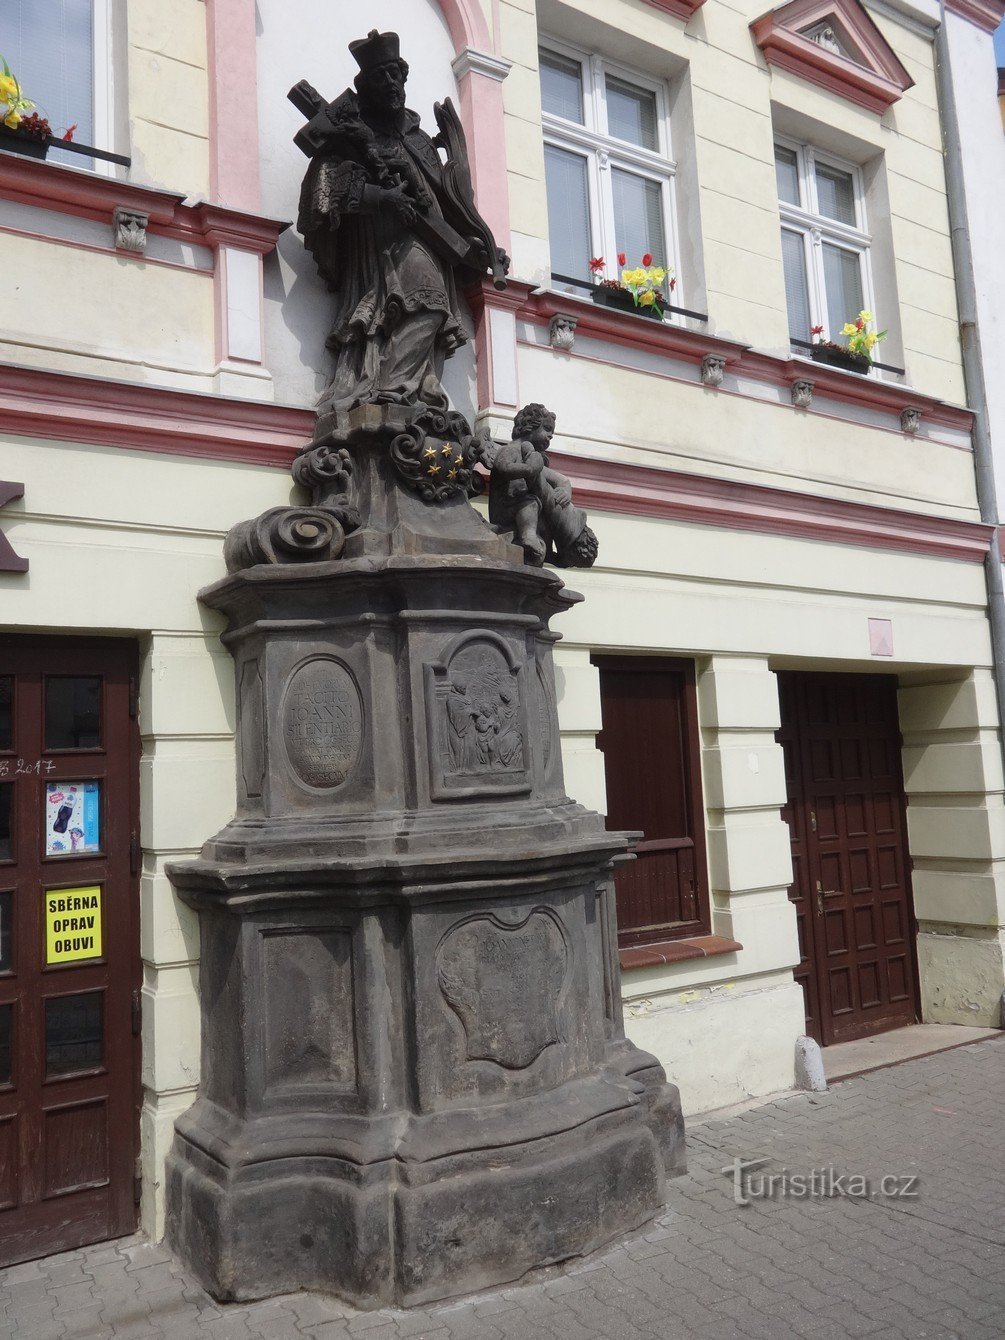 Ιωάννης (Ιωάννης) του Πομούκ - Αγ. Ο Jan Nepomucký και το άγαλμά του στην πόλη Osek